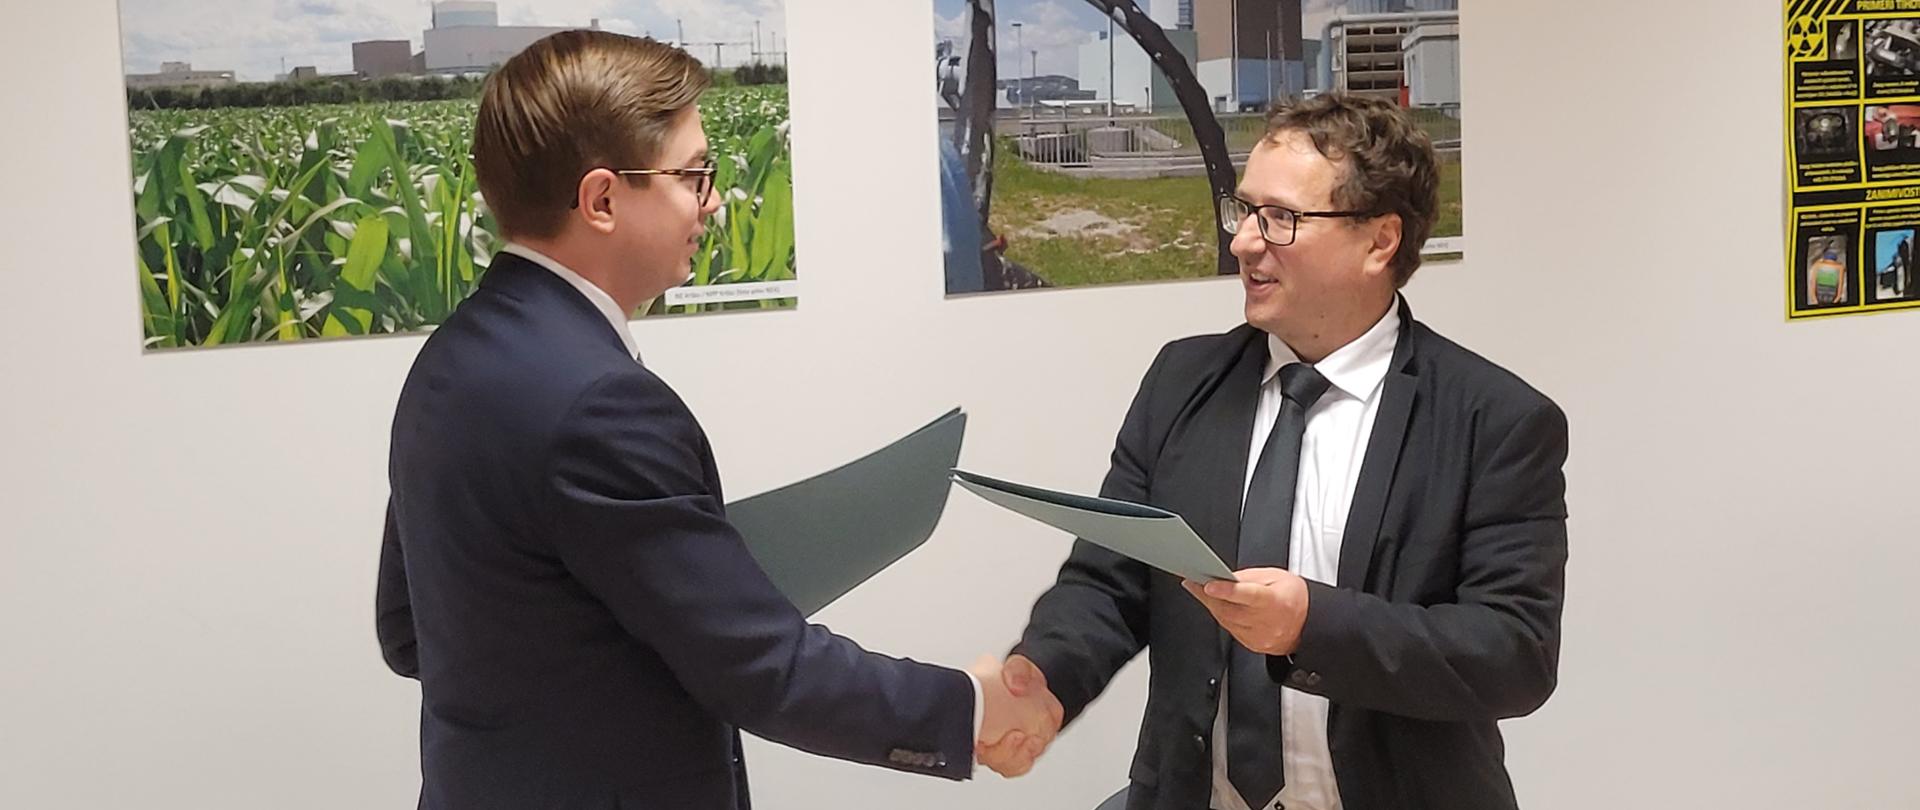 Prezes PAA dr Łukasz Młynarkiewicz podaje rękę Dyrektorowi SNSA Igorowi Sircowi po podpisaniu umowy o współpracy